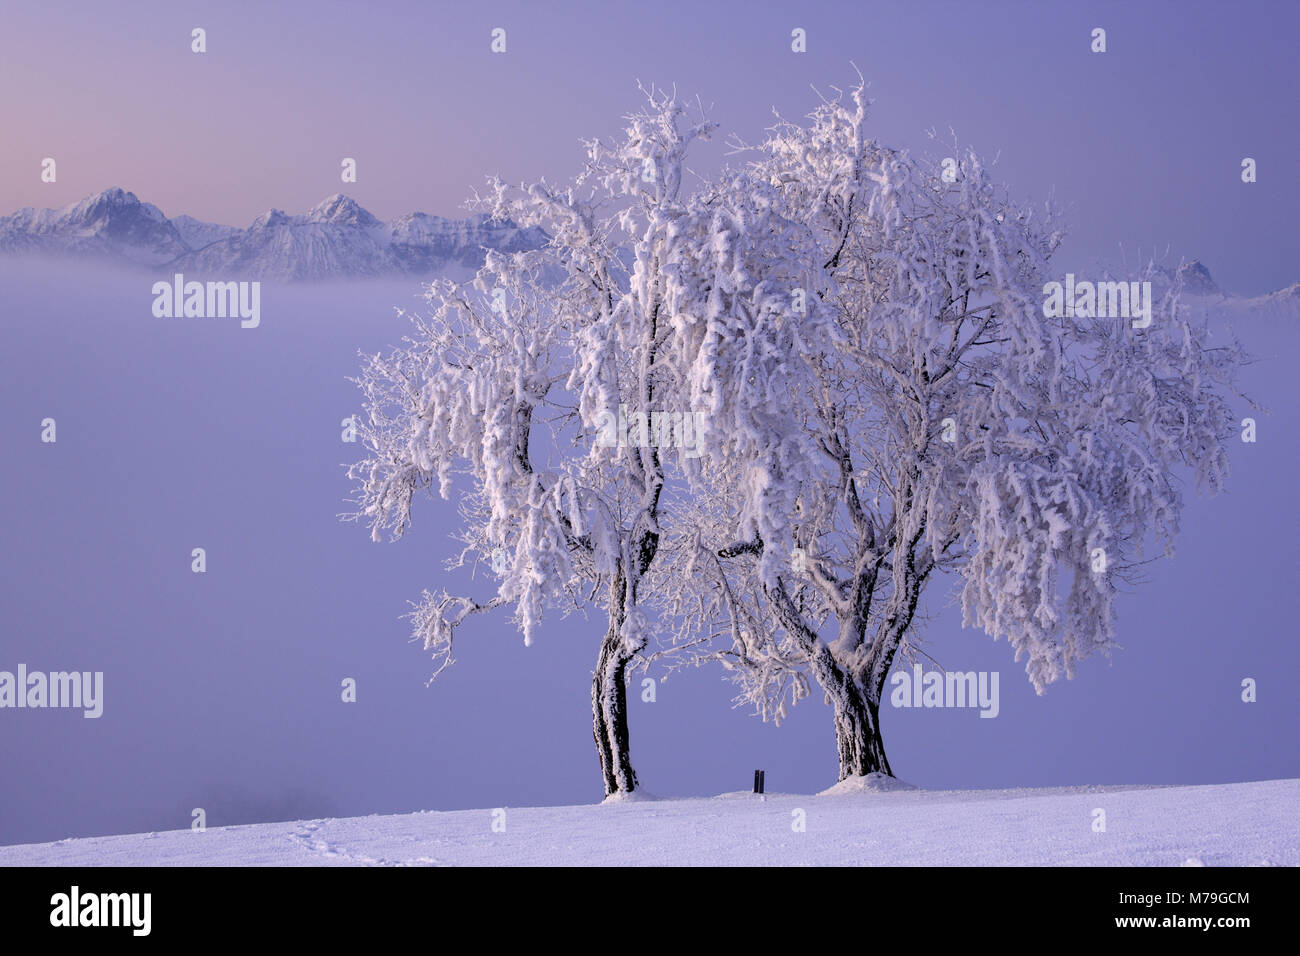 Germany, Bavaria, Allgäu, east Allgäu, Königswinkel, Auerberg, winter scenery, Tannheimer alps, Stock Photo